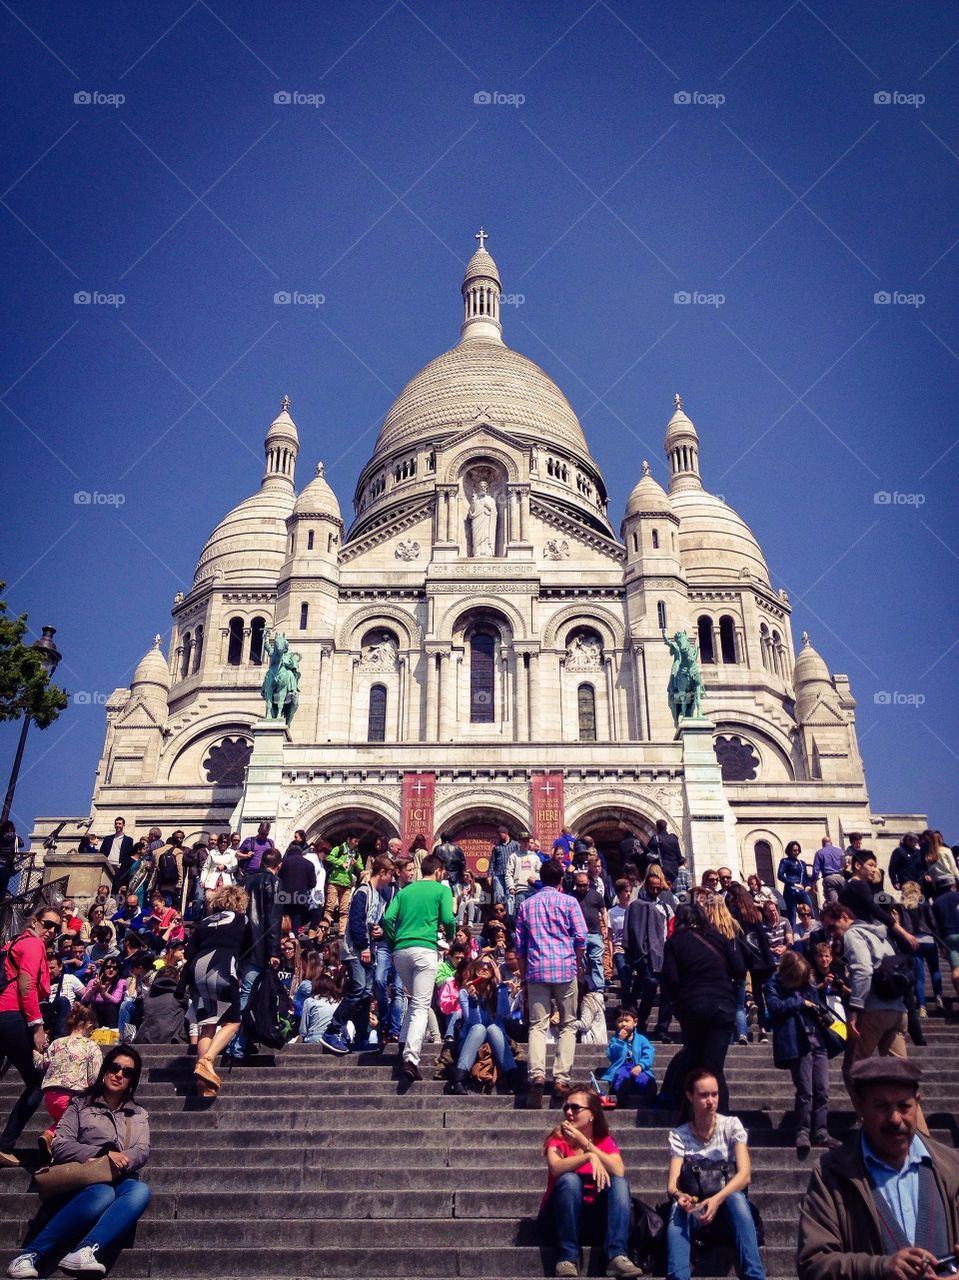 Basílica del Sagrado Corazón (Paris - France)